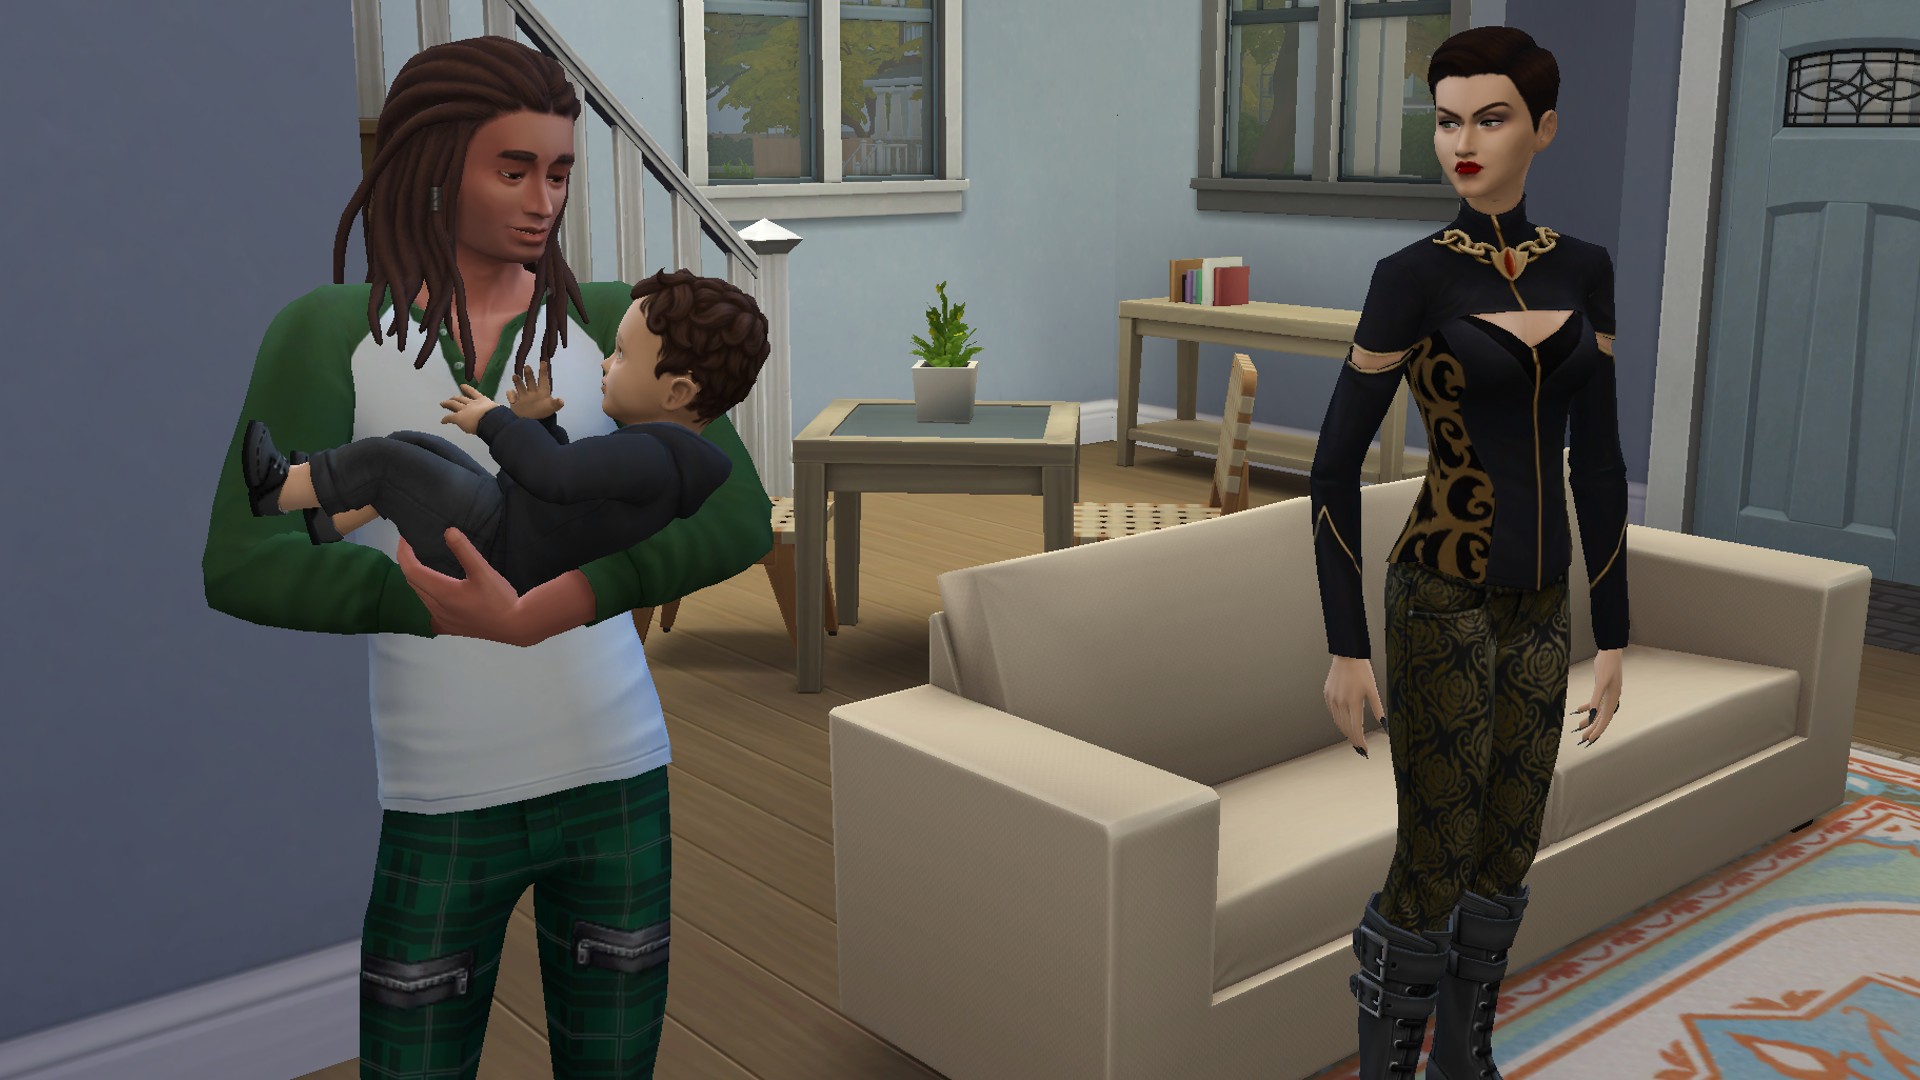 Kaikki vauvojen virstanpylväät Sims 4:ssä: yhdessä kasvaminen